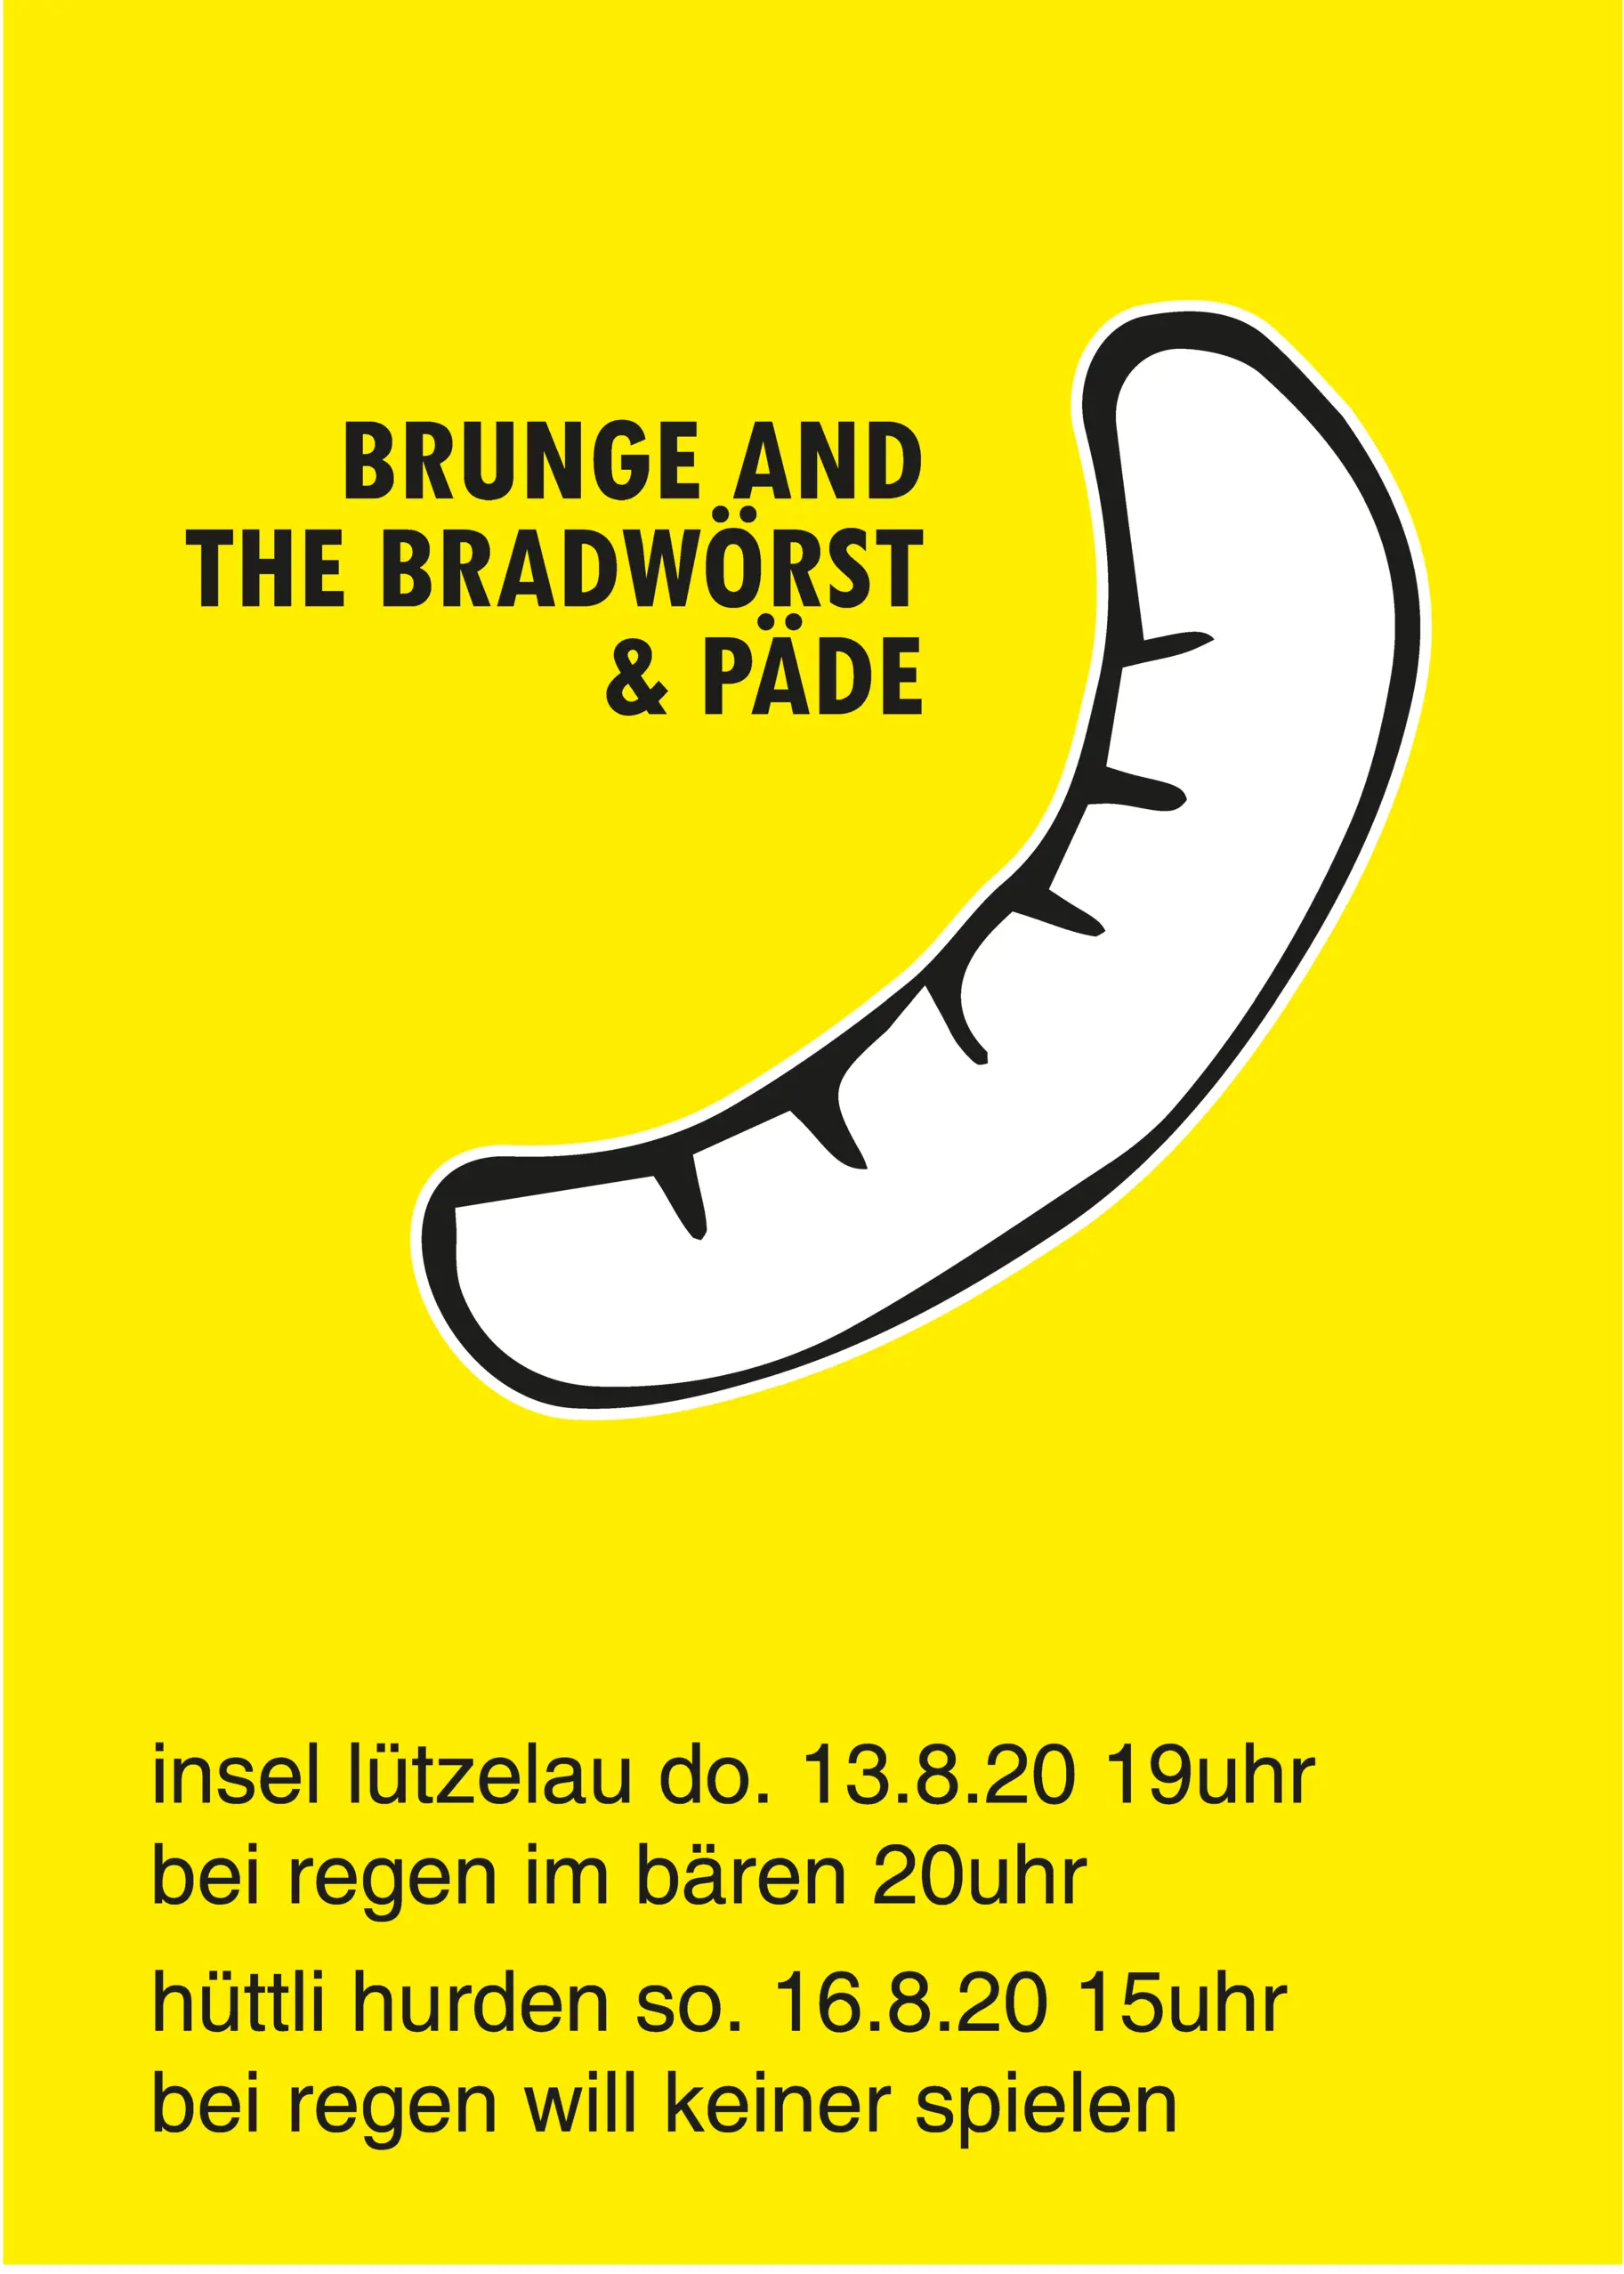 Event "BRUNGE AND THE BRADWÖRST & PÄDE"